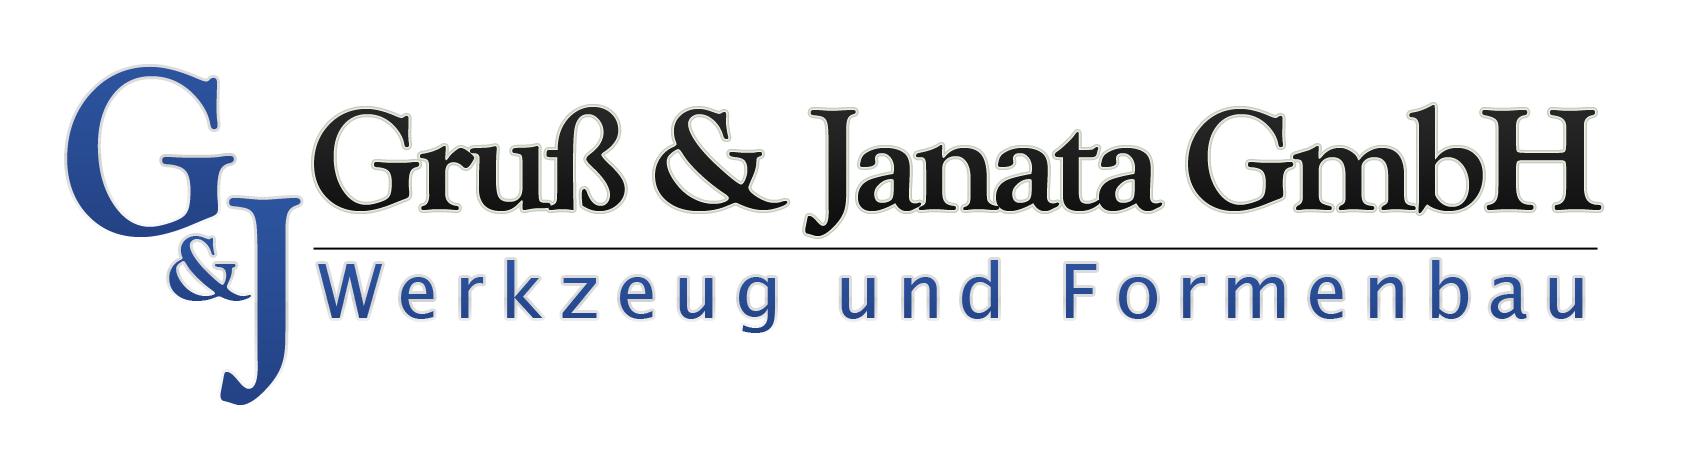 GruÃ & Janata GmbH Logo